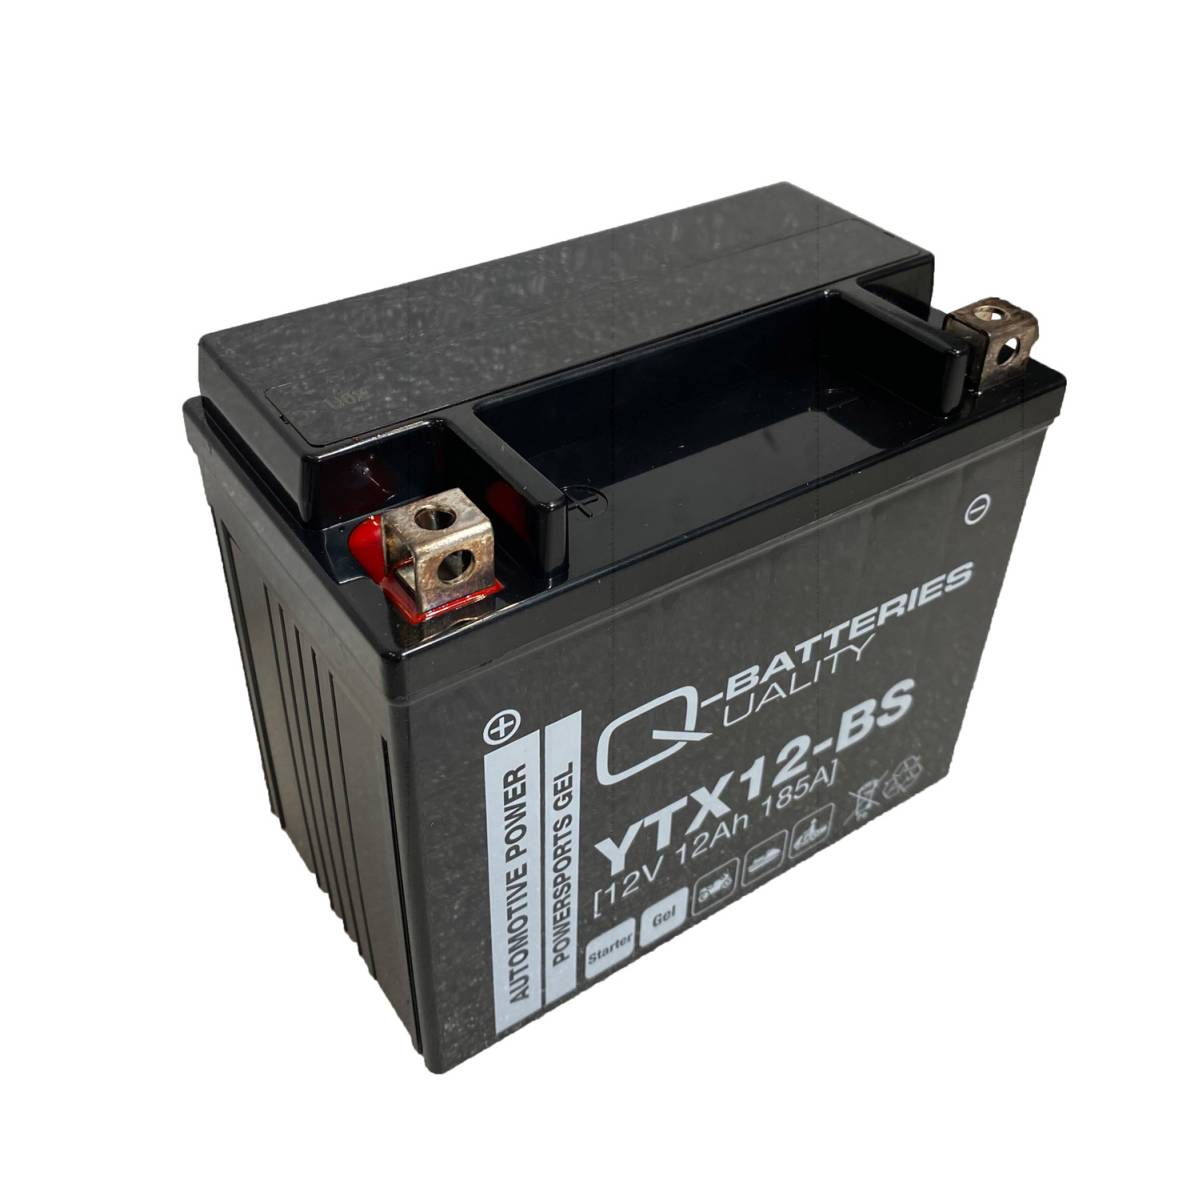 Q-Batteries Batteria moto YTX12-BS Gel 51012 12V 12Ah 185A